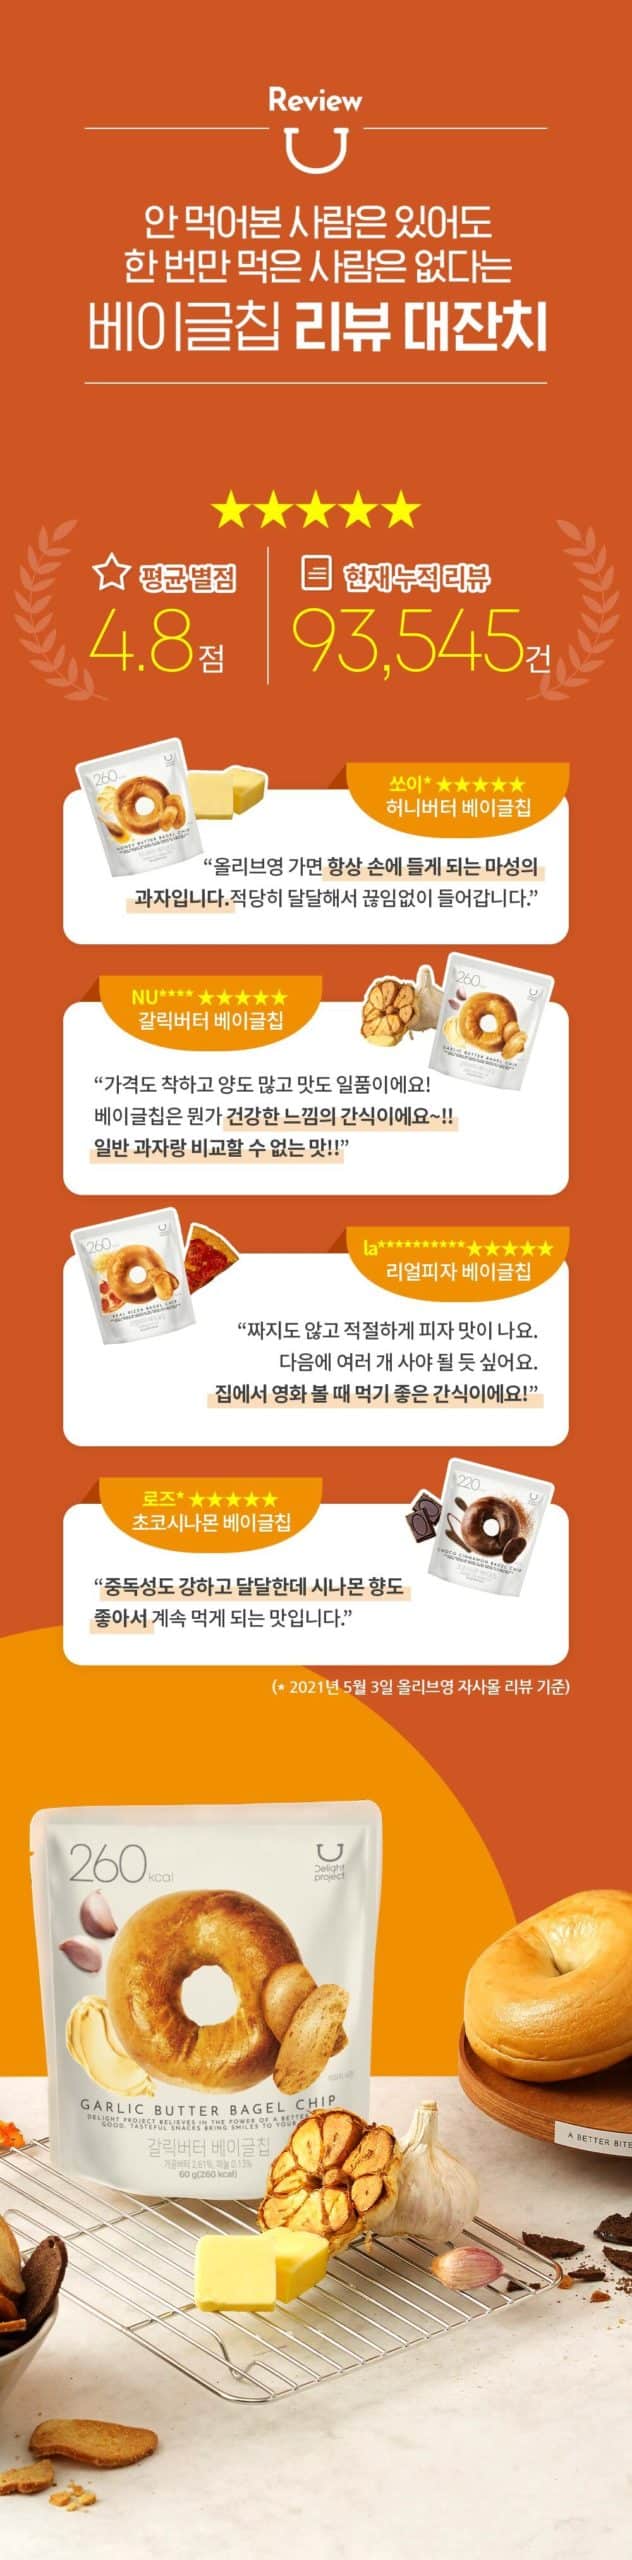 韓國食品-[딜라이트 프로젝트] 베이글칩 (갈릭버터) 60g